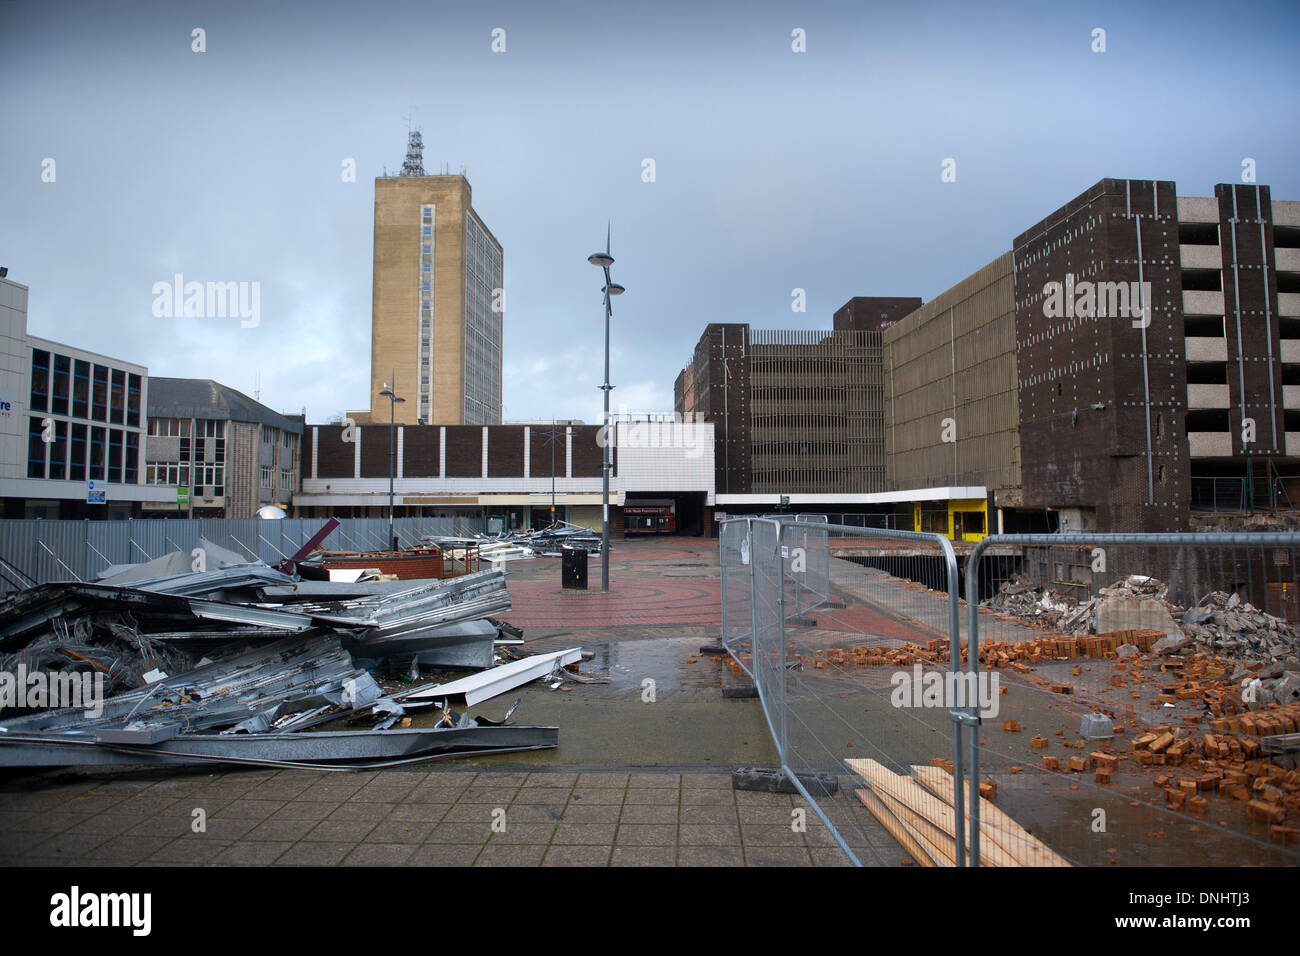 Newport centro città di Newport South Wales prima fu demolita per far posto a un nuovo centro commerciale frati a piedi. Foto Stock